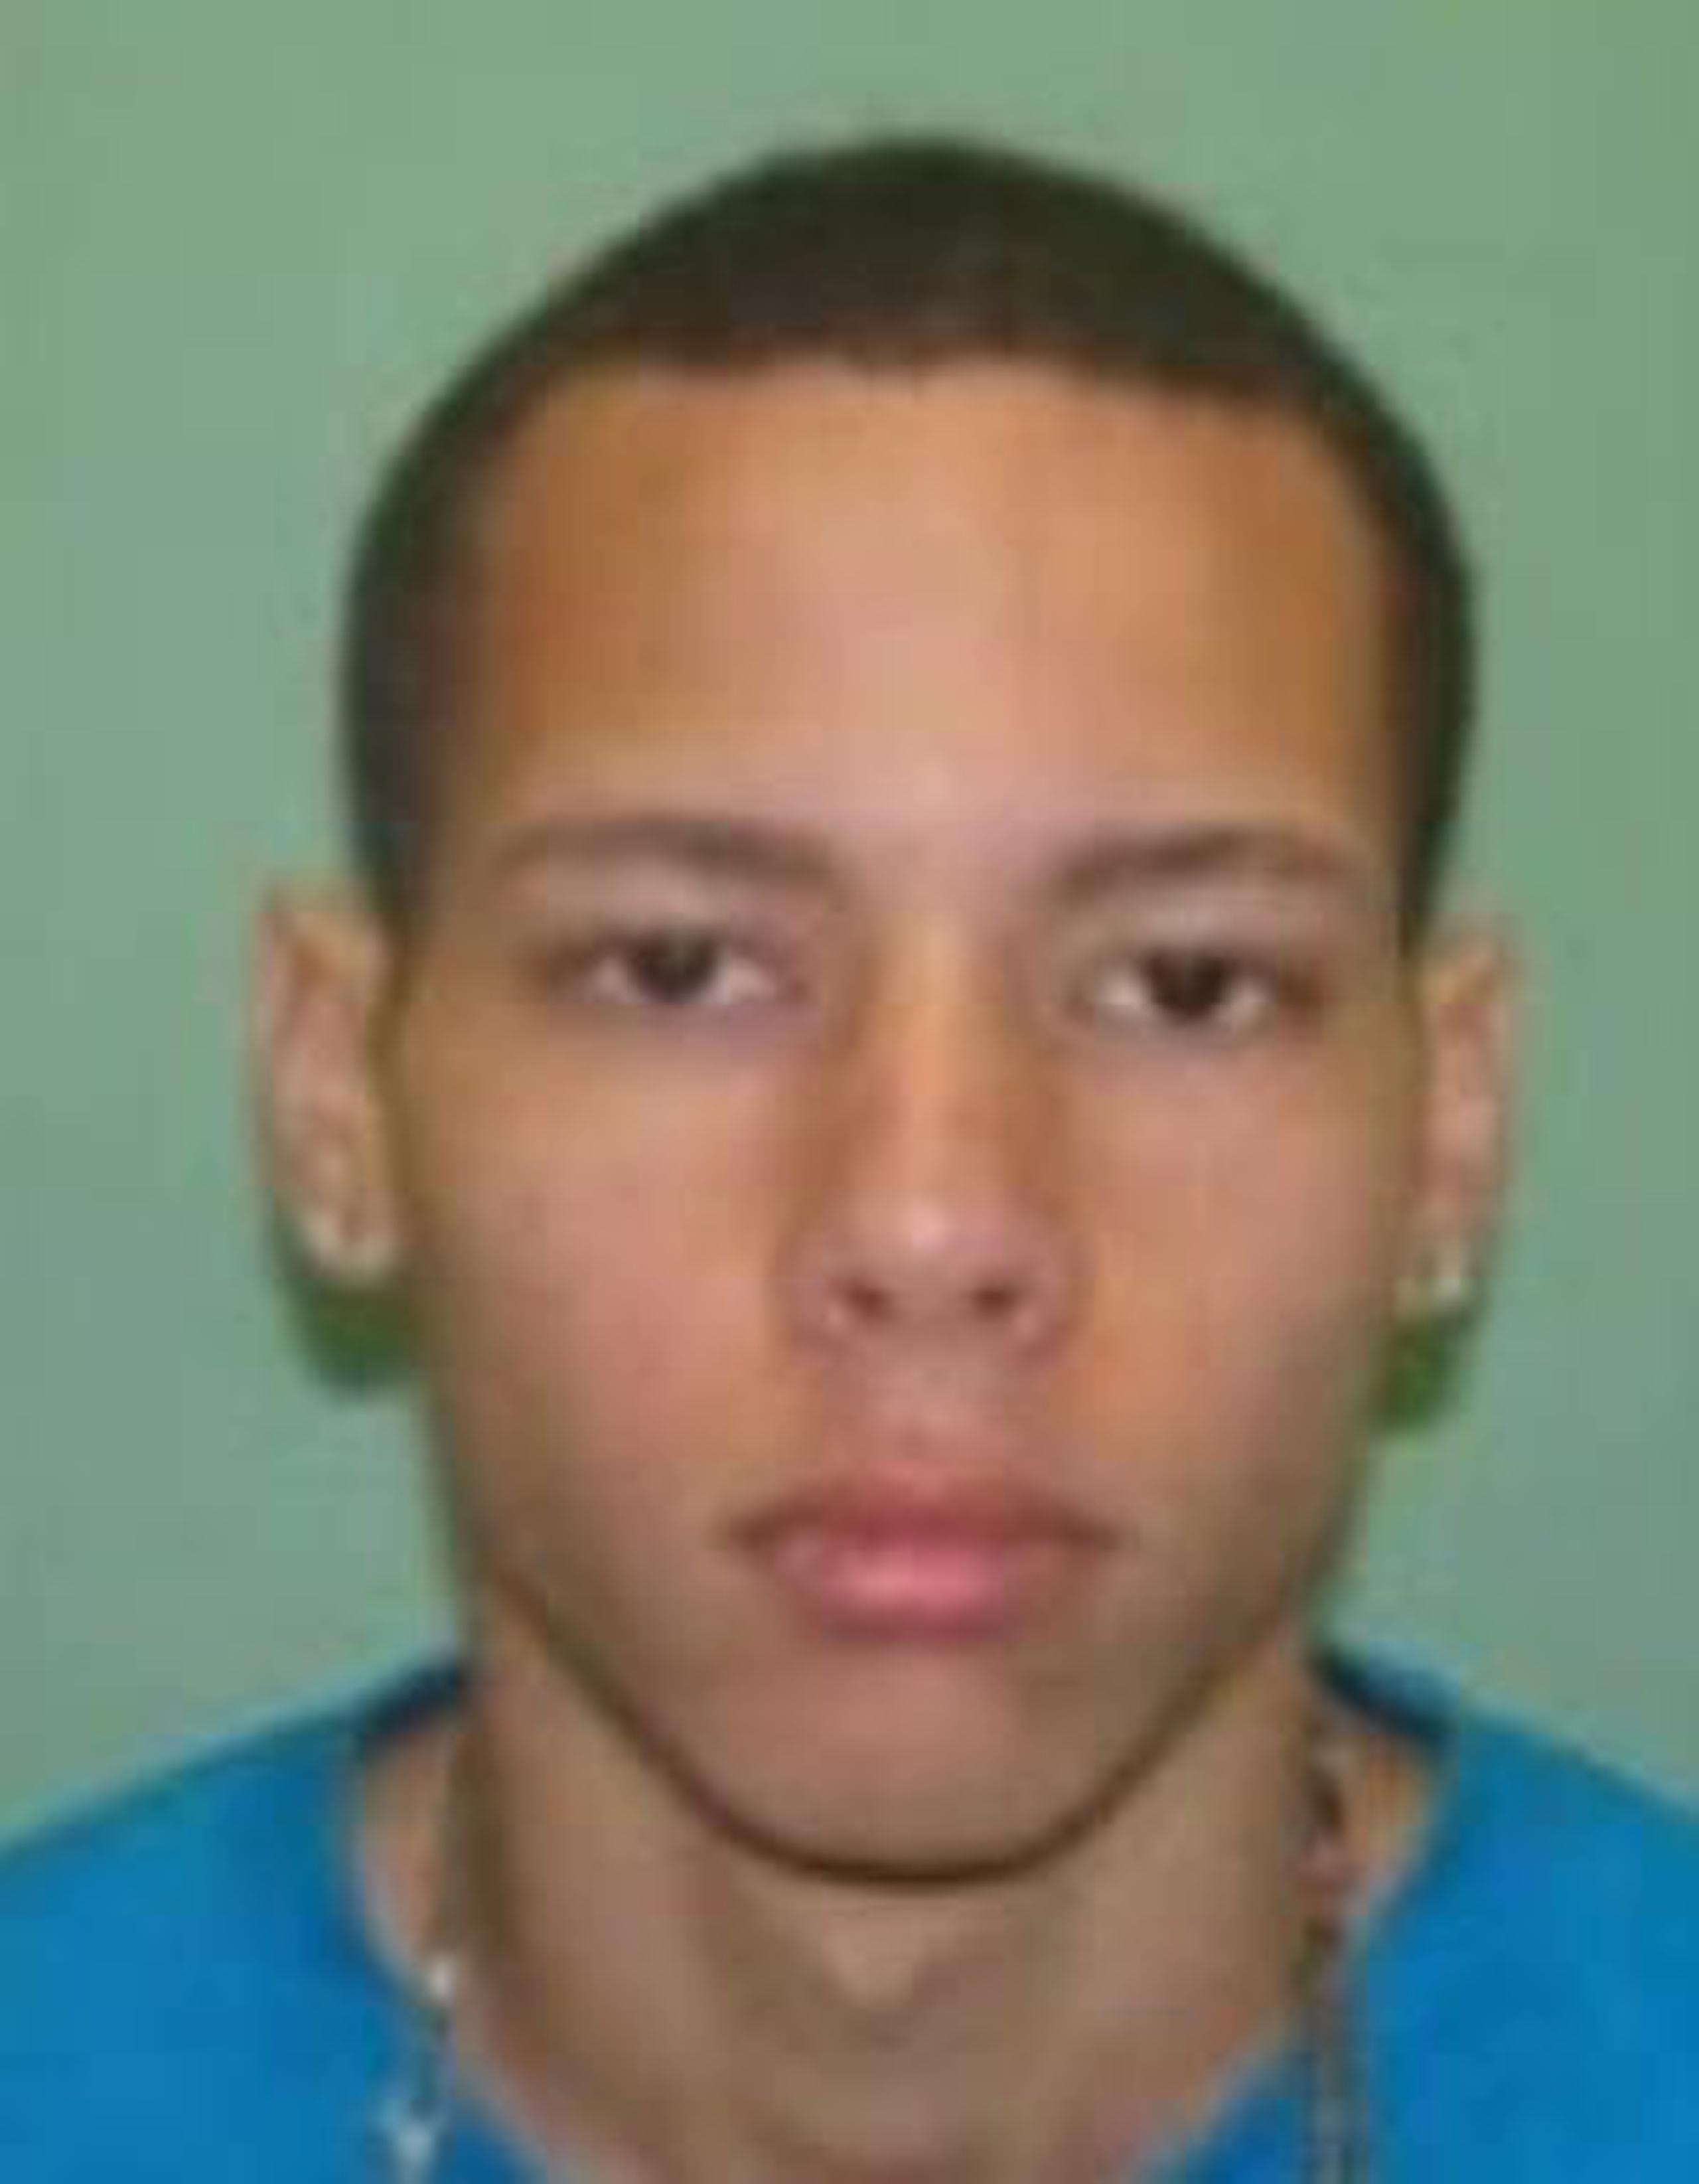 El imputado fue identificado como Miguel A. Ramos Sánchez, de 23 años. (Suministrada)